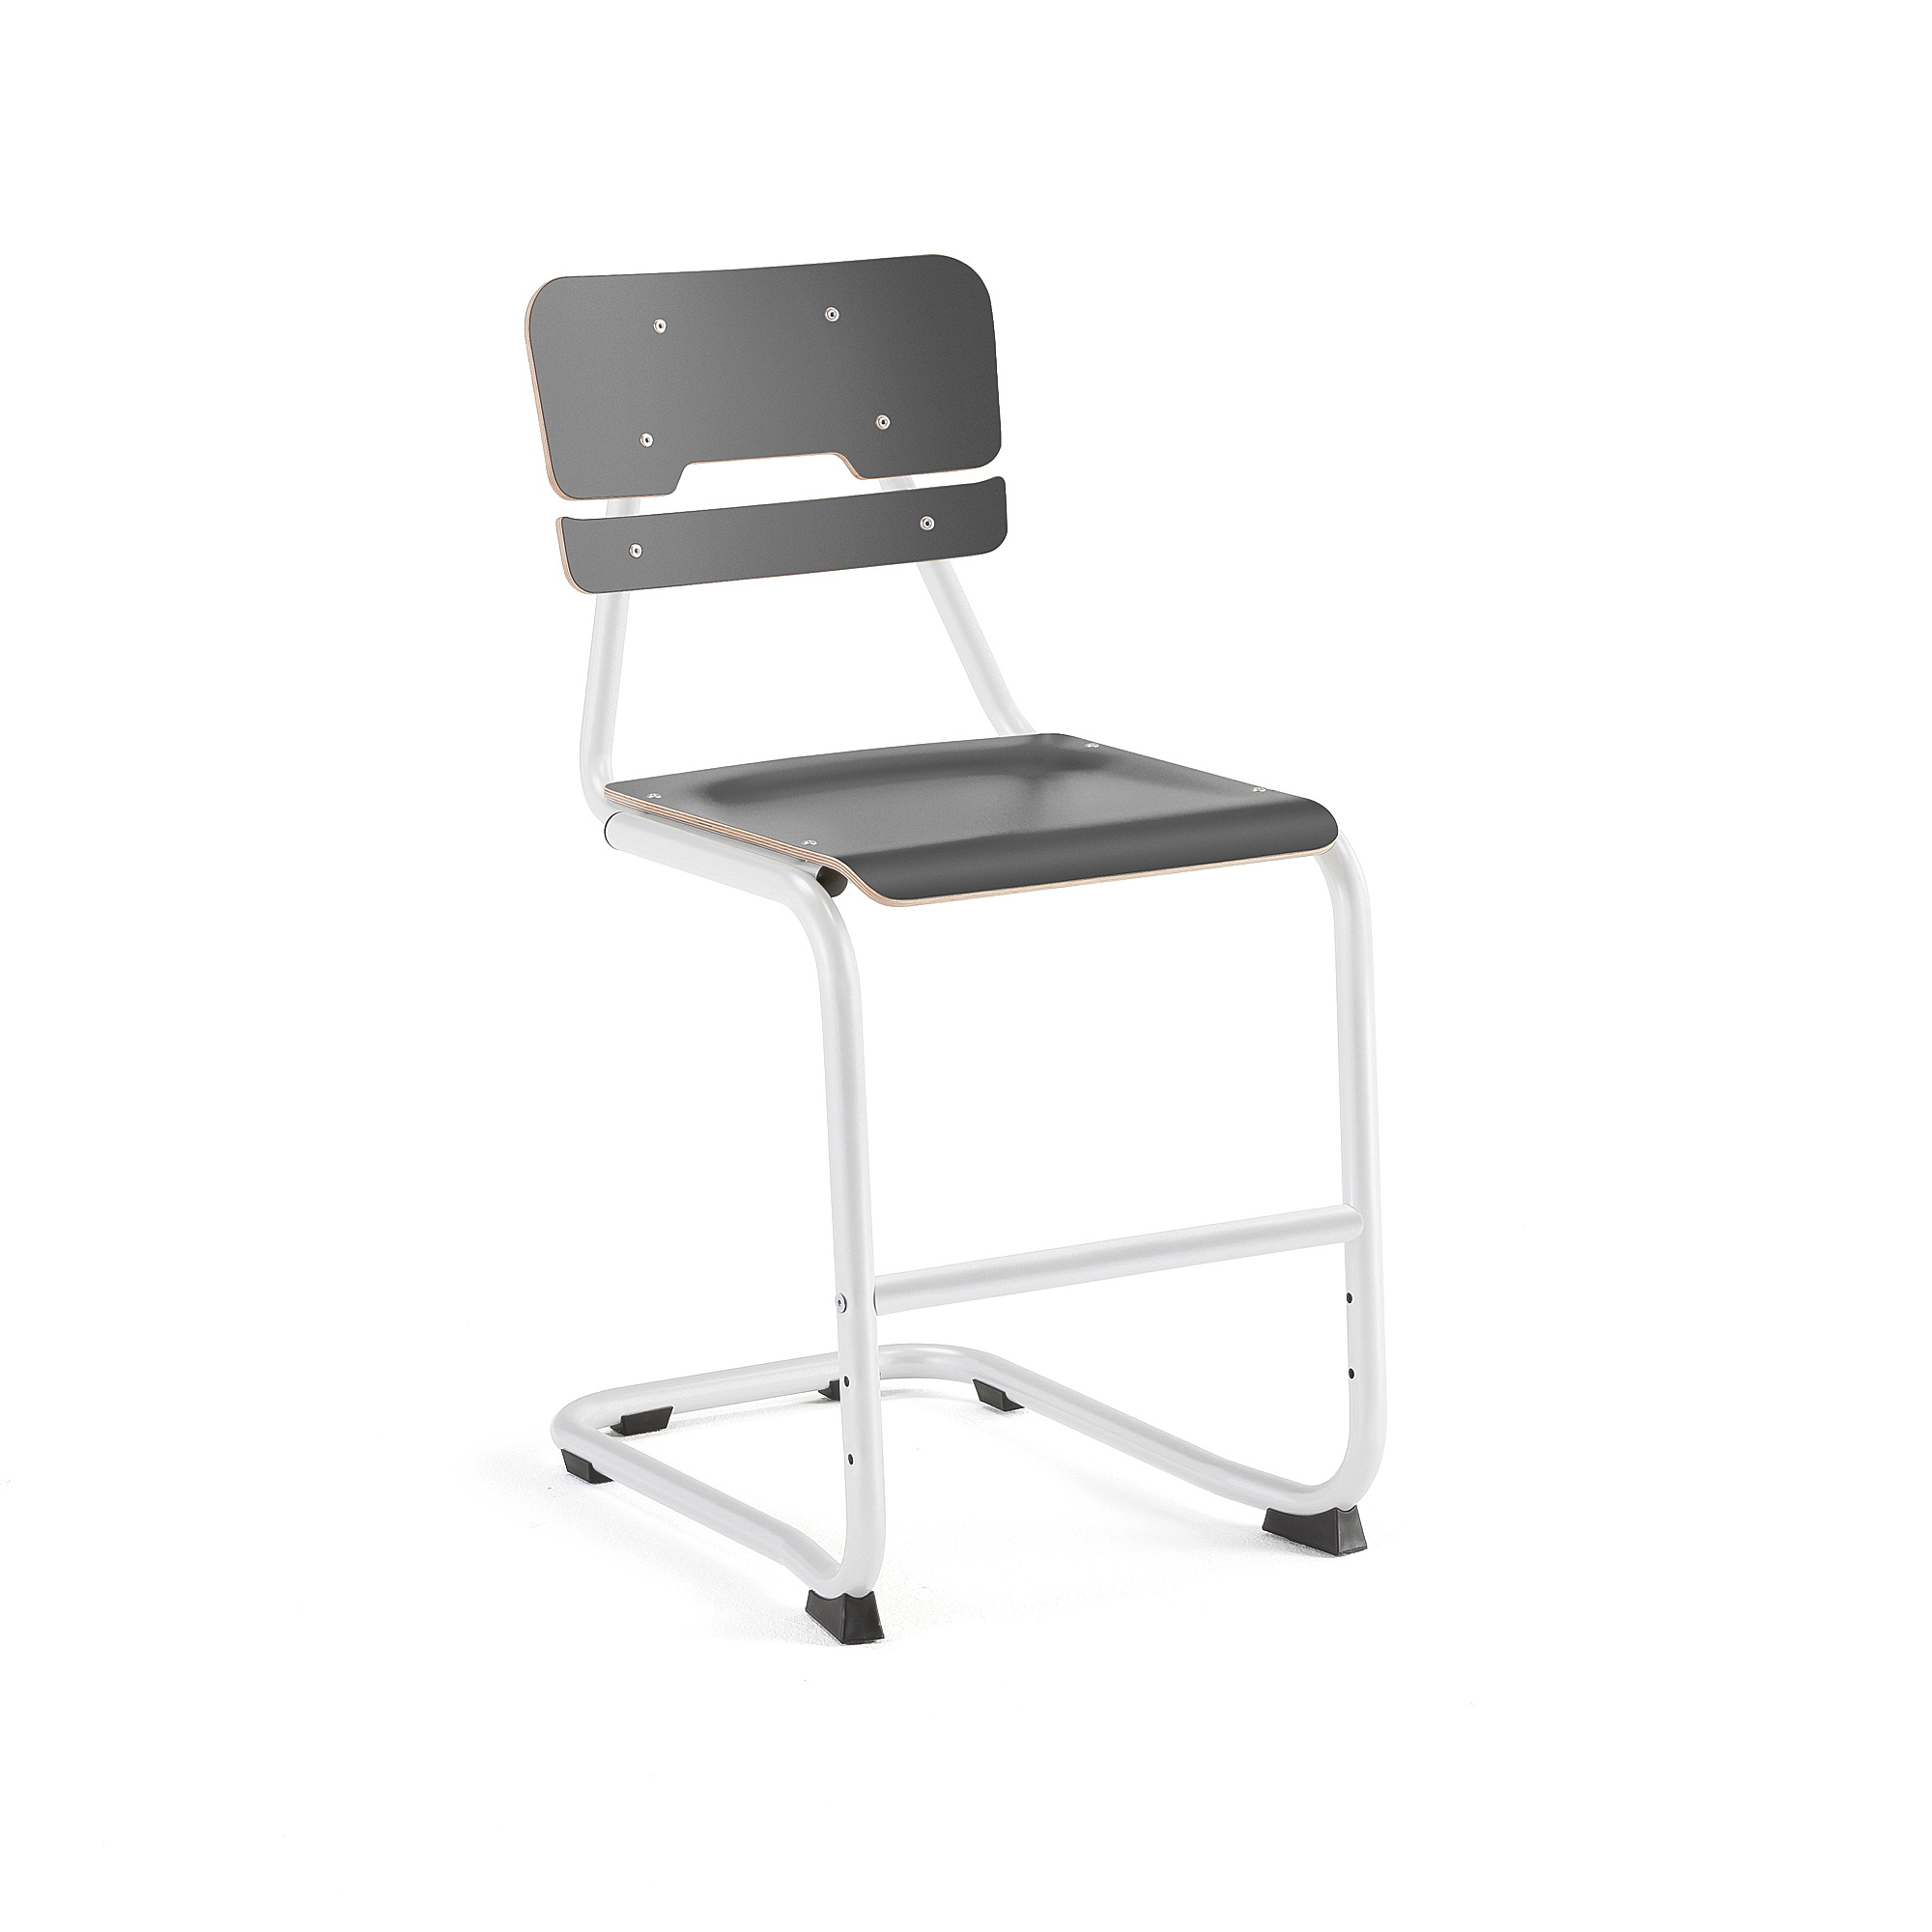 Školní židle LEGERE I, výška 500 mm, bílá, antracitově šedá